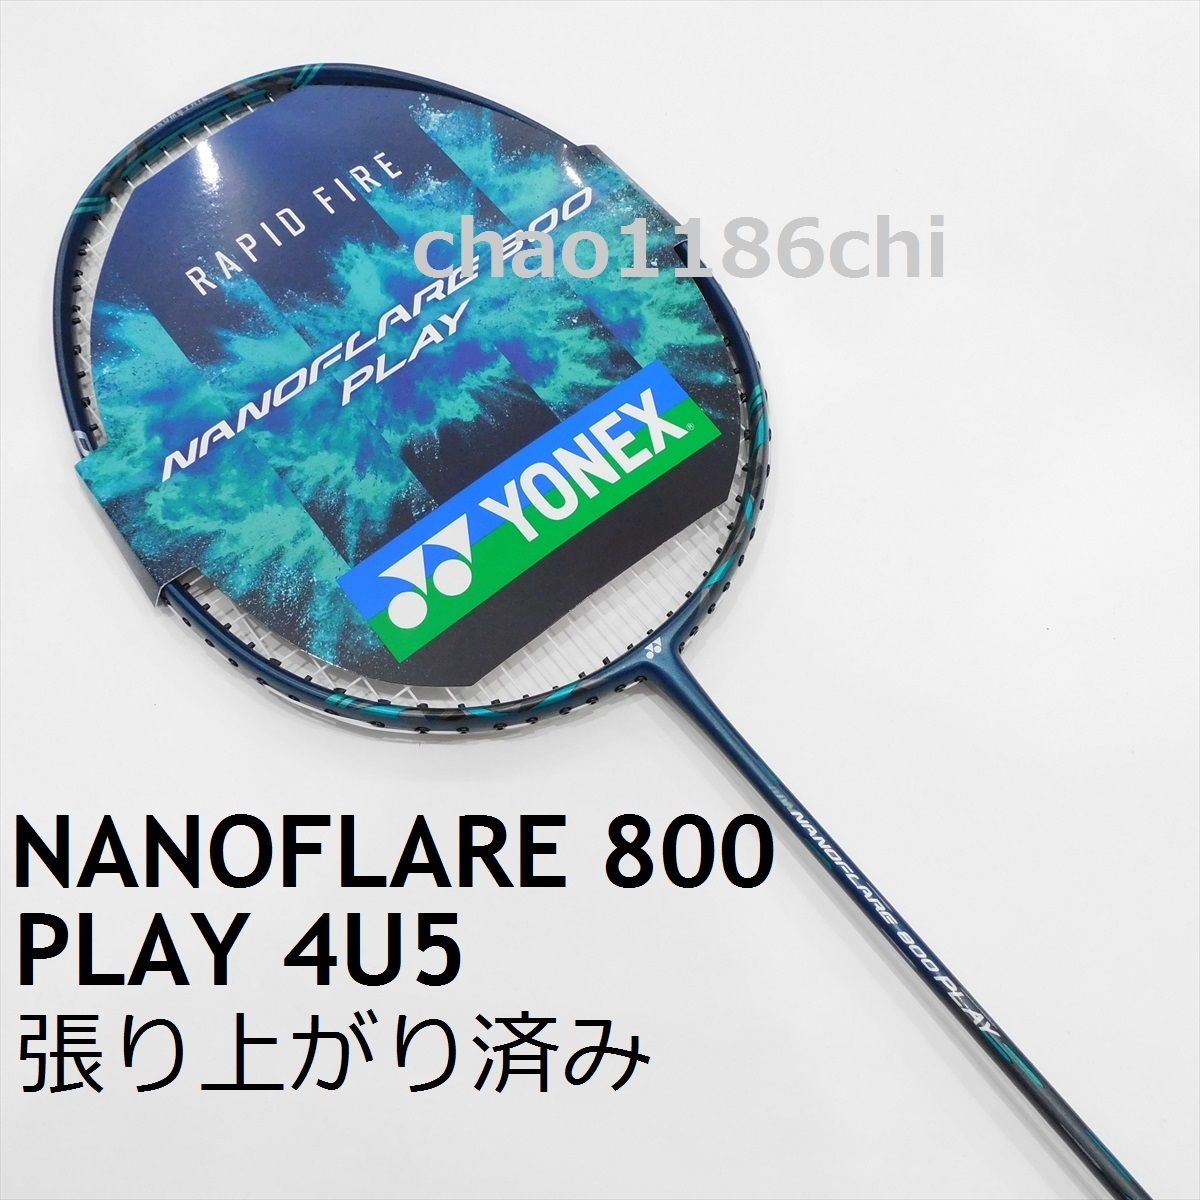 送料込/新品/ヨネックス/4U5/張済/NANOFLARE 800 PLAY/ナノフレア800プレイ/NF-800P/ナノフレア800プロ/ナノフレア800ゲーム/ナノフレア800